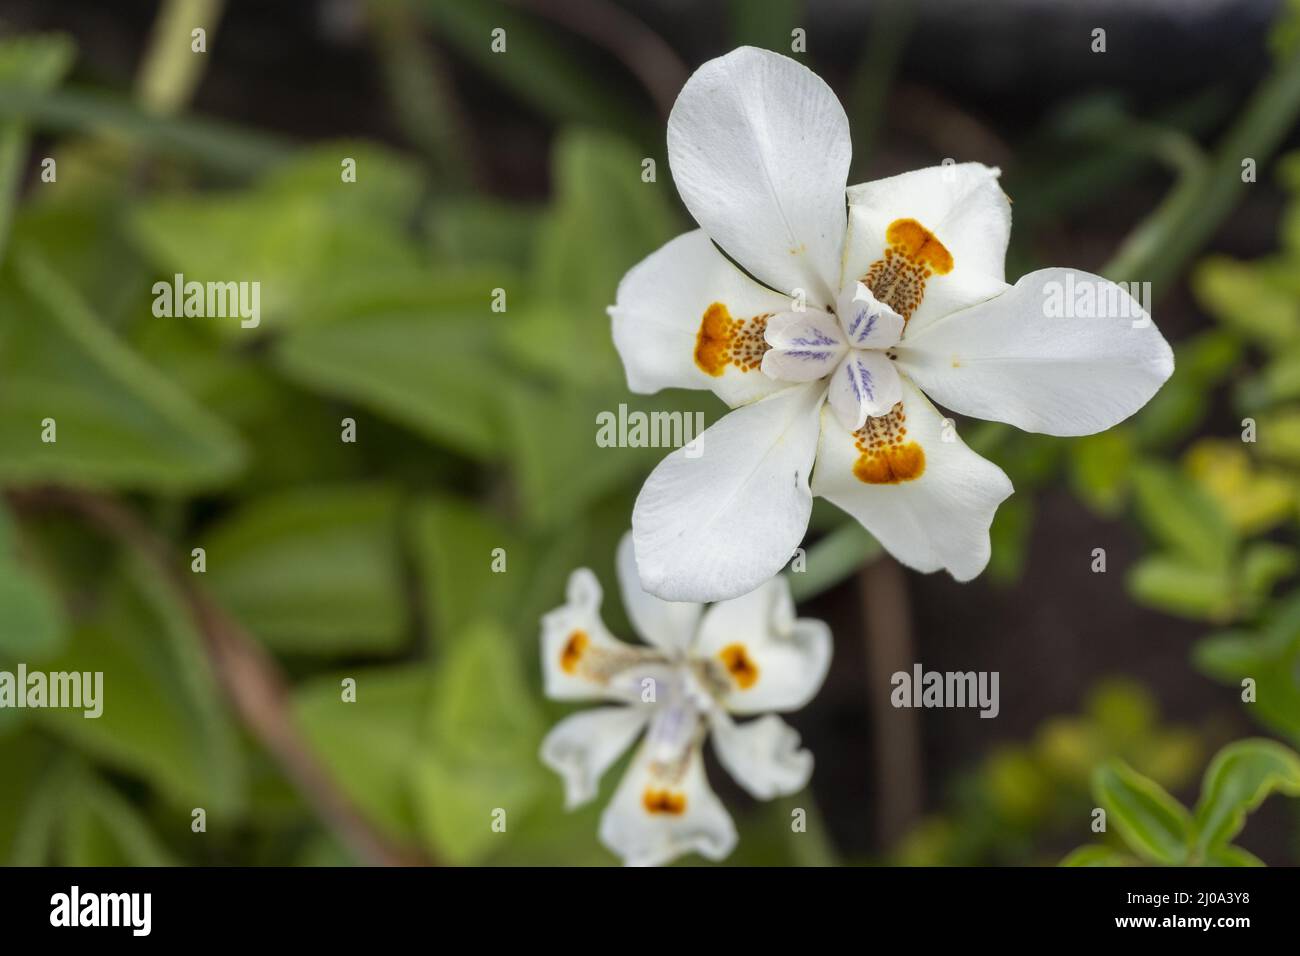 beautiful white iris flowers Stock Photo